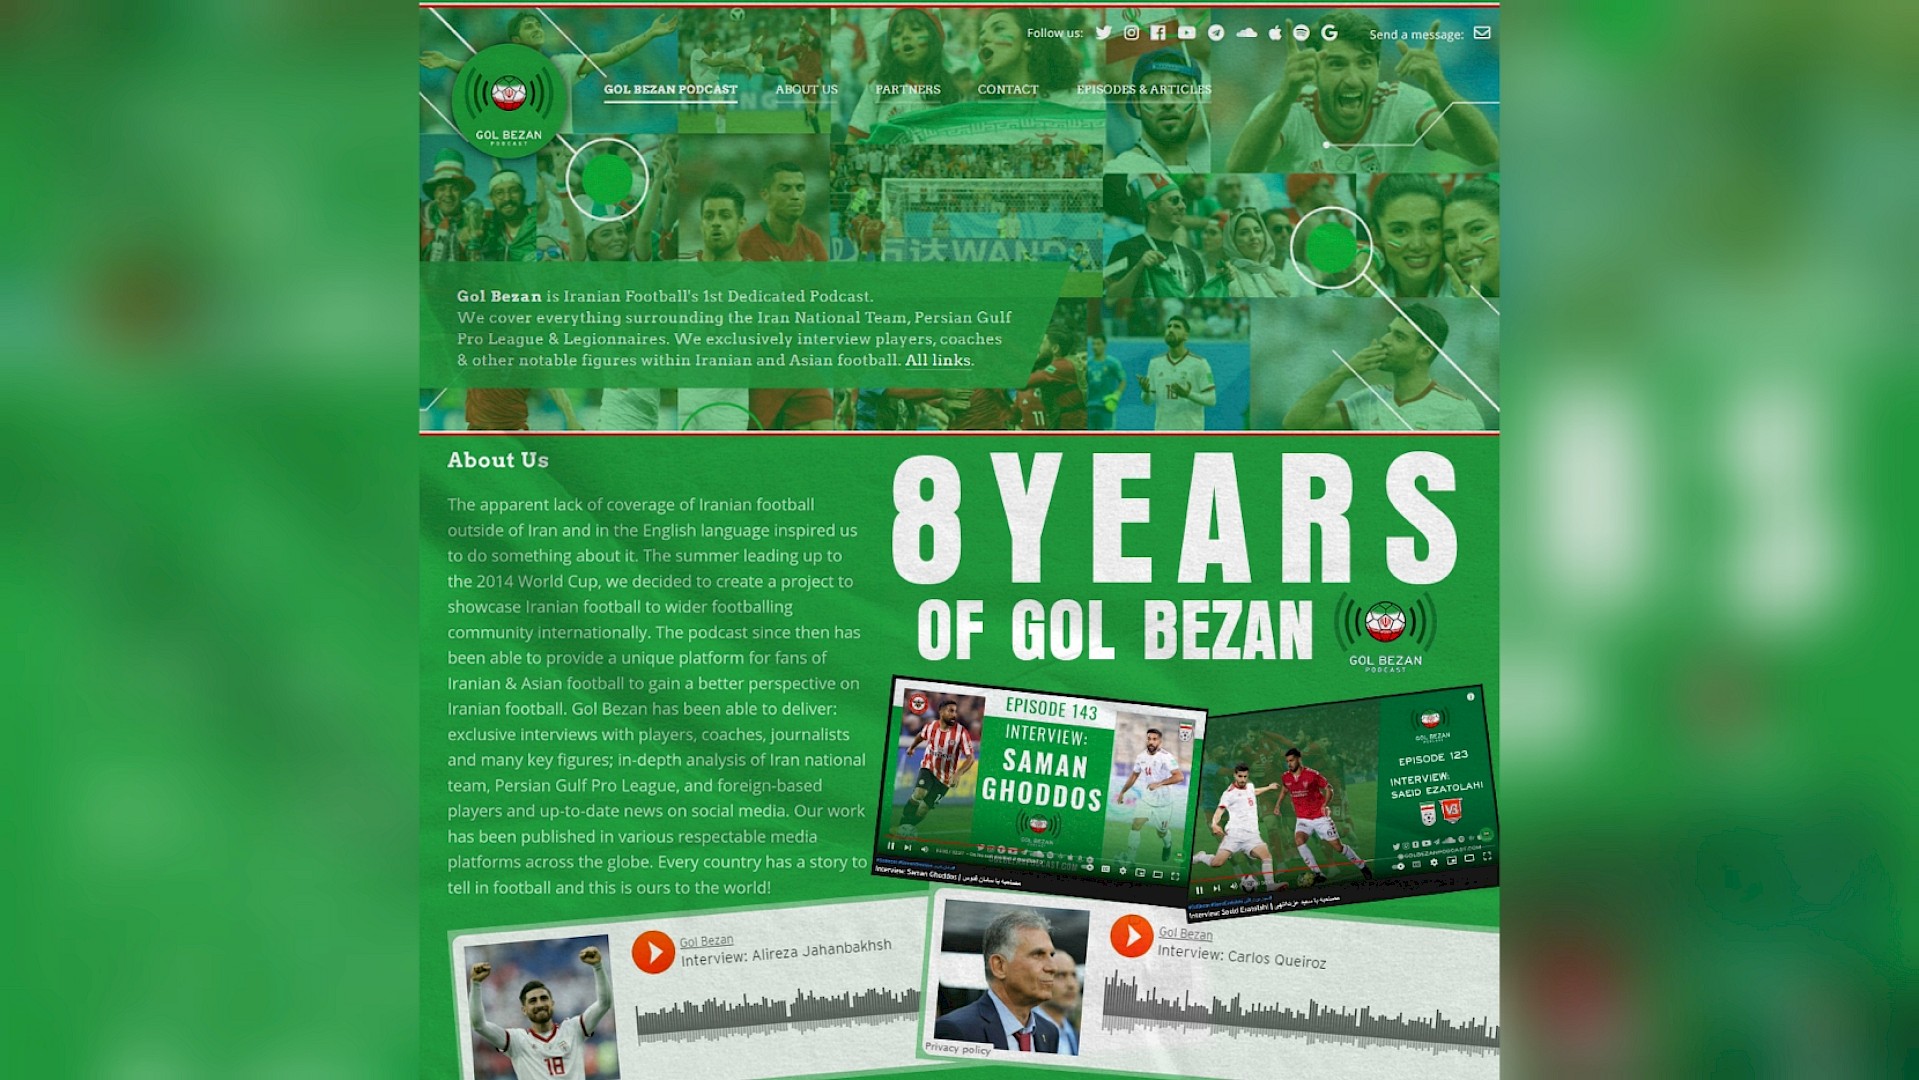 8 Years Of Gol Bezan